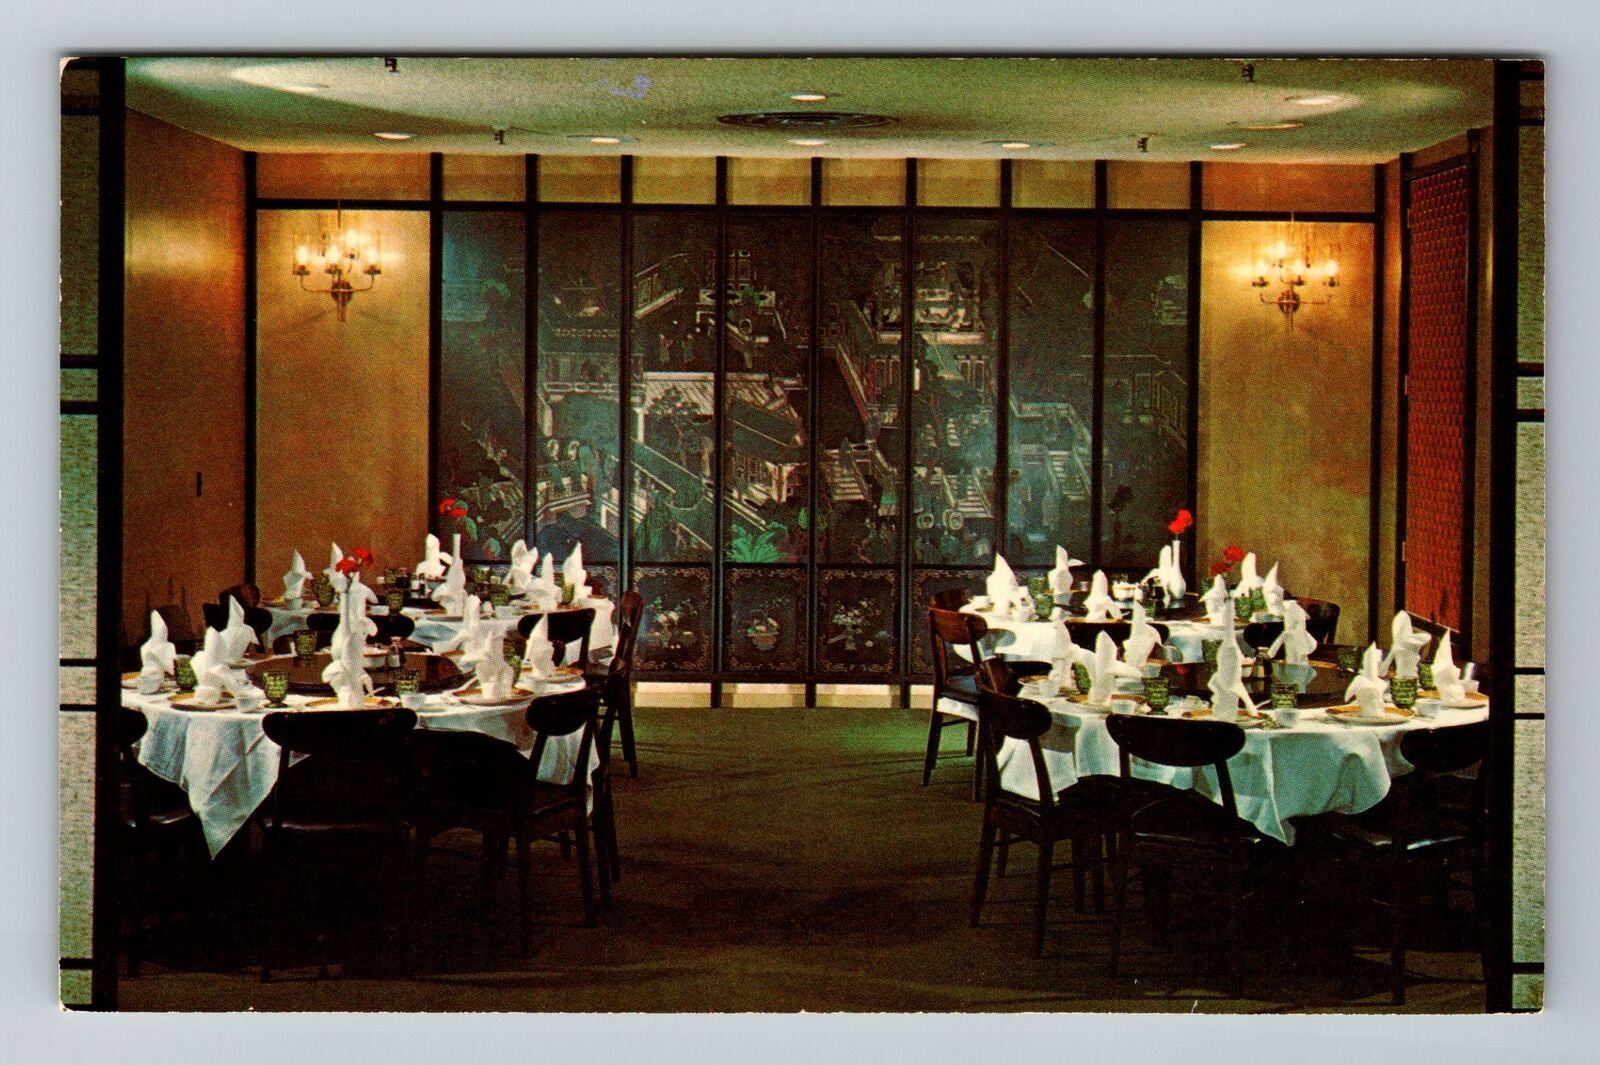 Los Altos CA-California, The Coromandel Room, Dining Area, Vintage Postcard